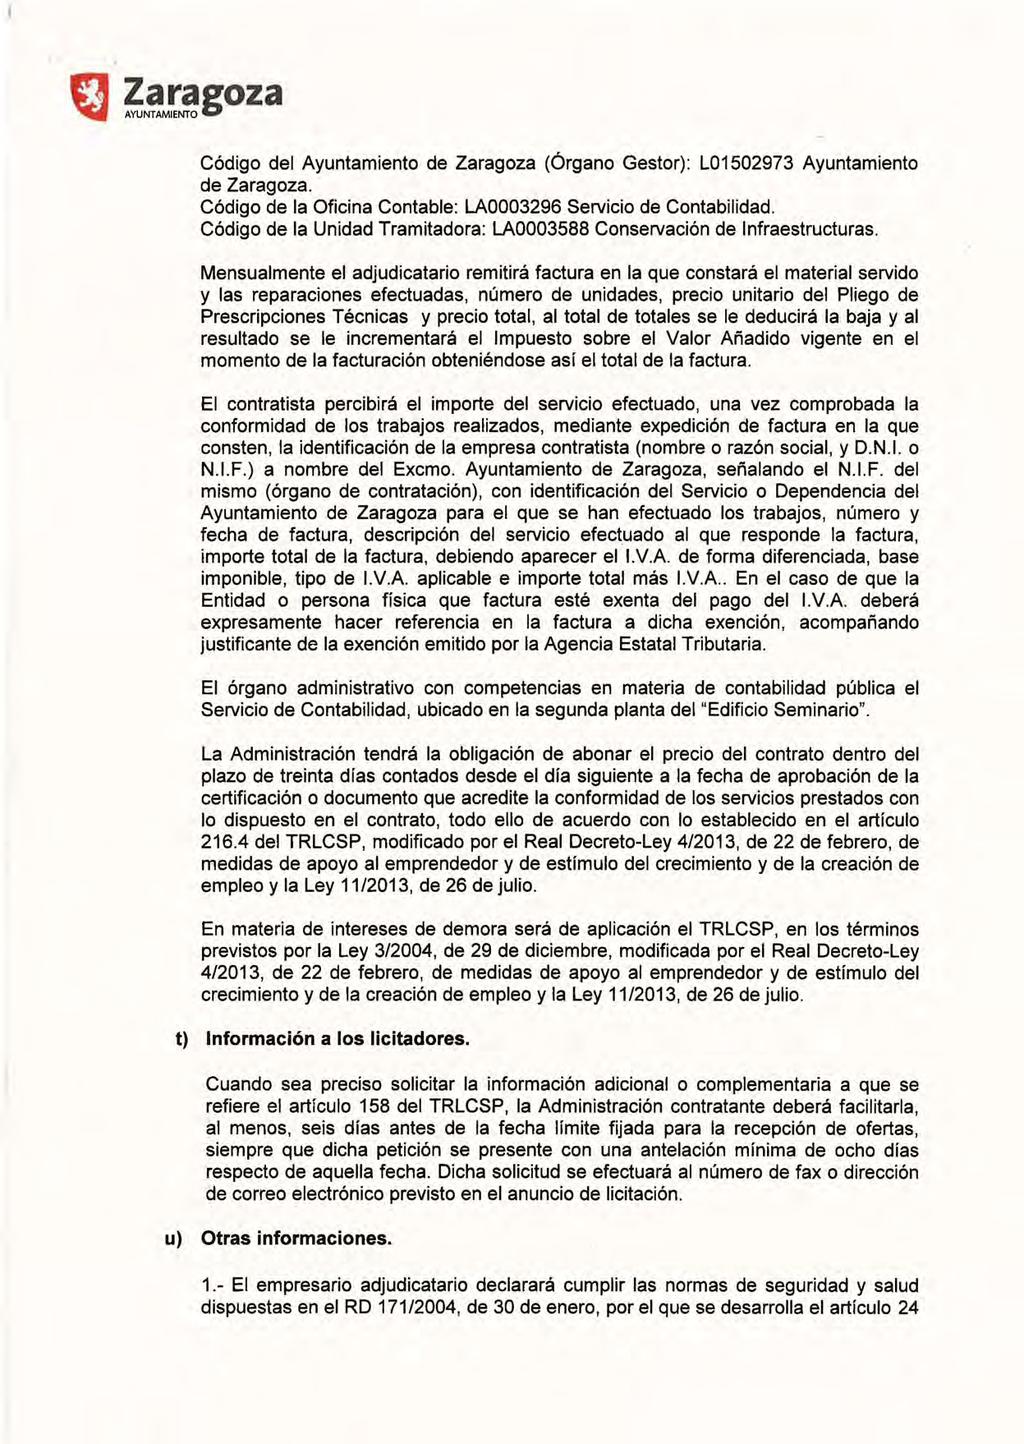 Código del Ayuntamiento de Zaragoza (Órgano Gestor): L01502973 Ayuntamiento de Zaragoza. Código de la Oficina Contable: LA0003296 Servicio de Contabilidad.